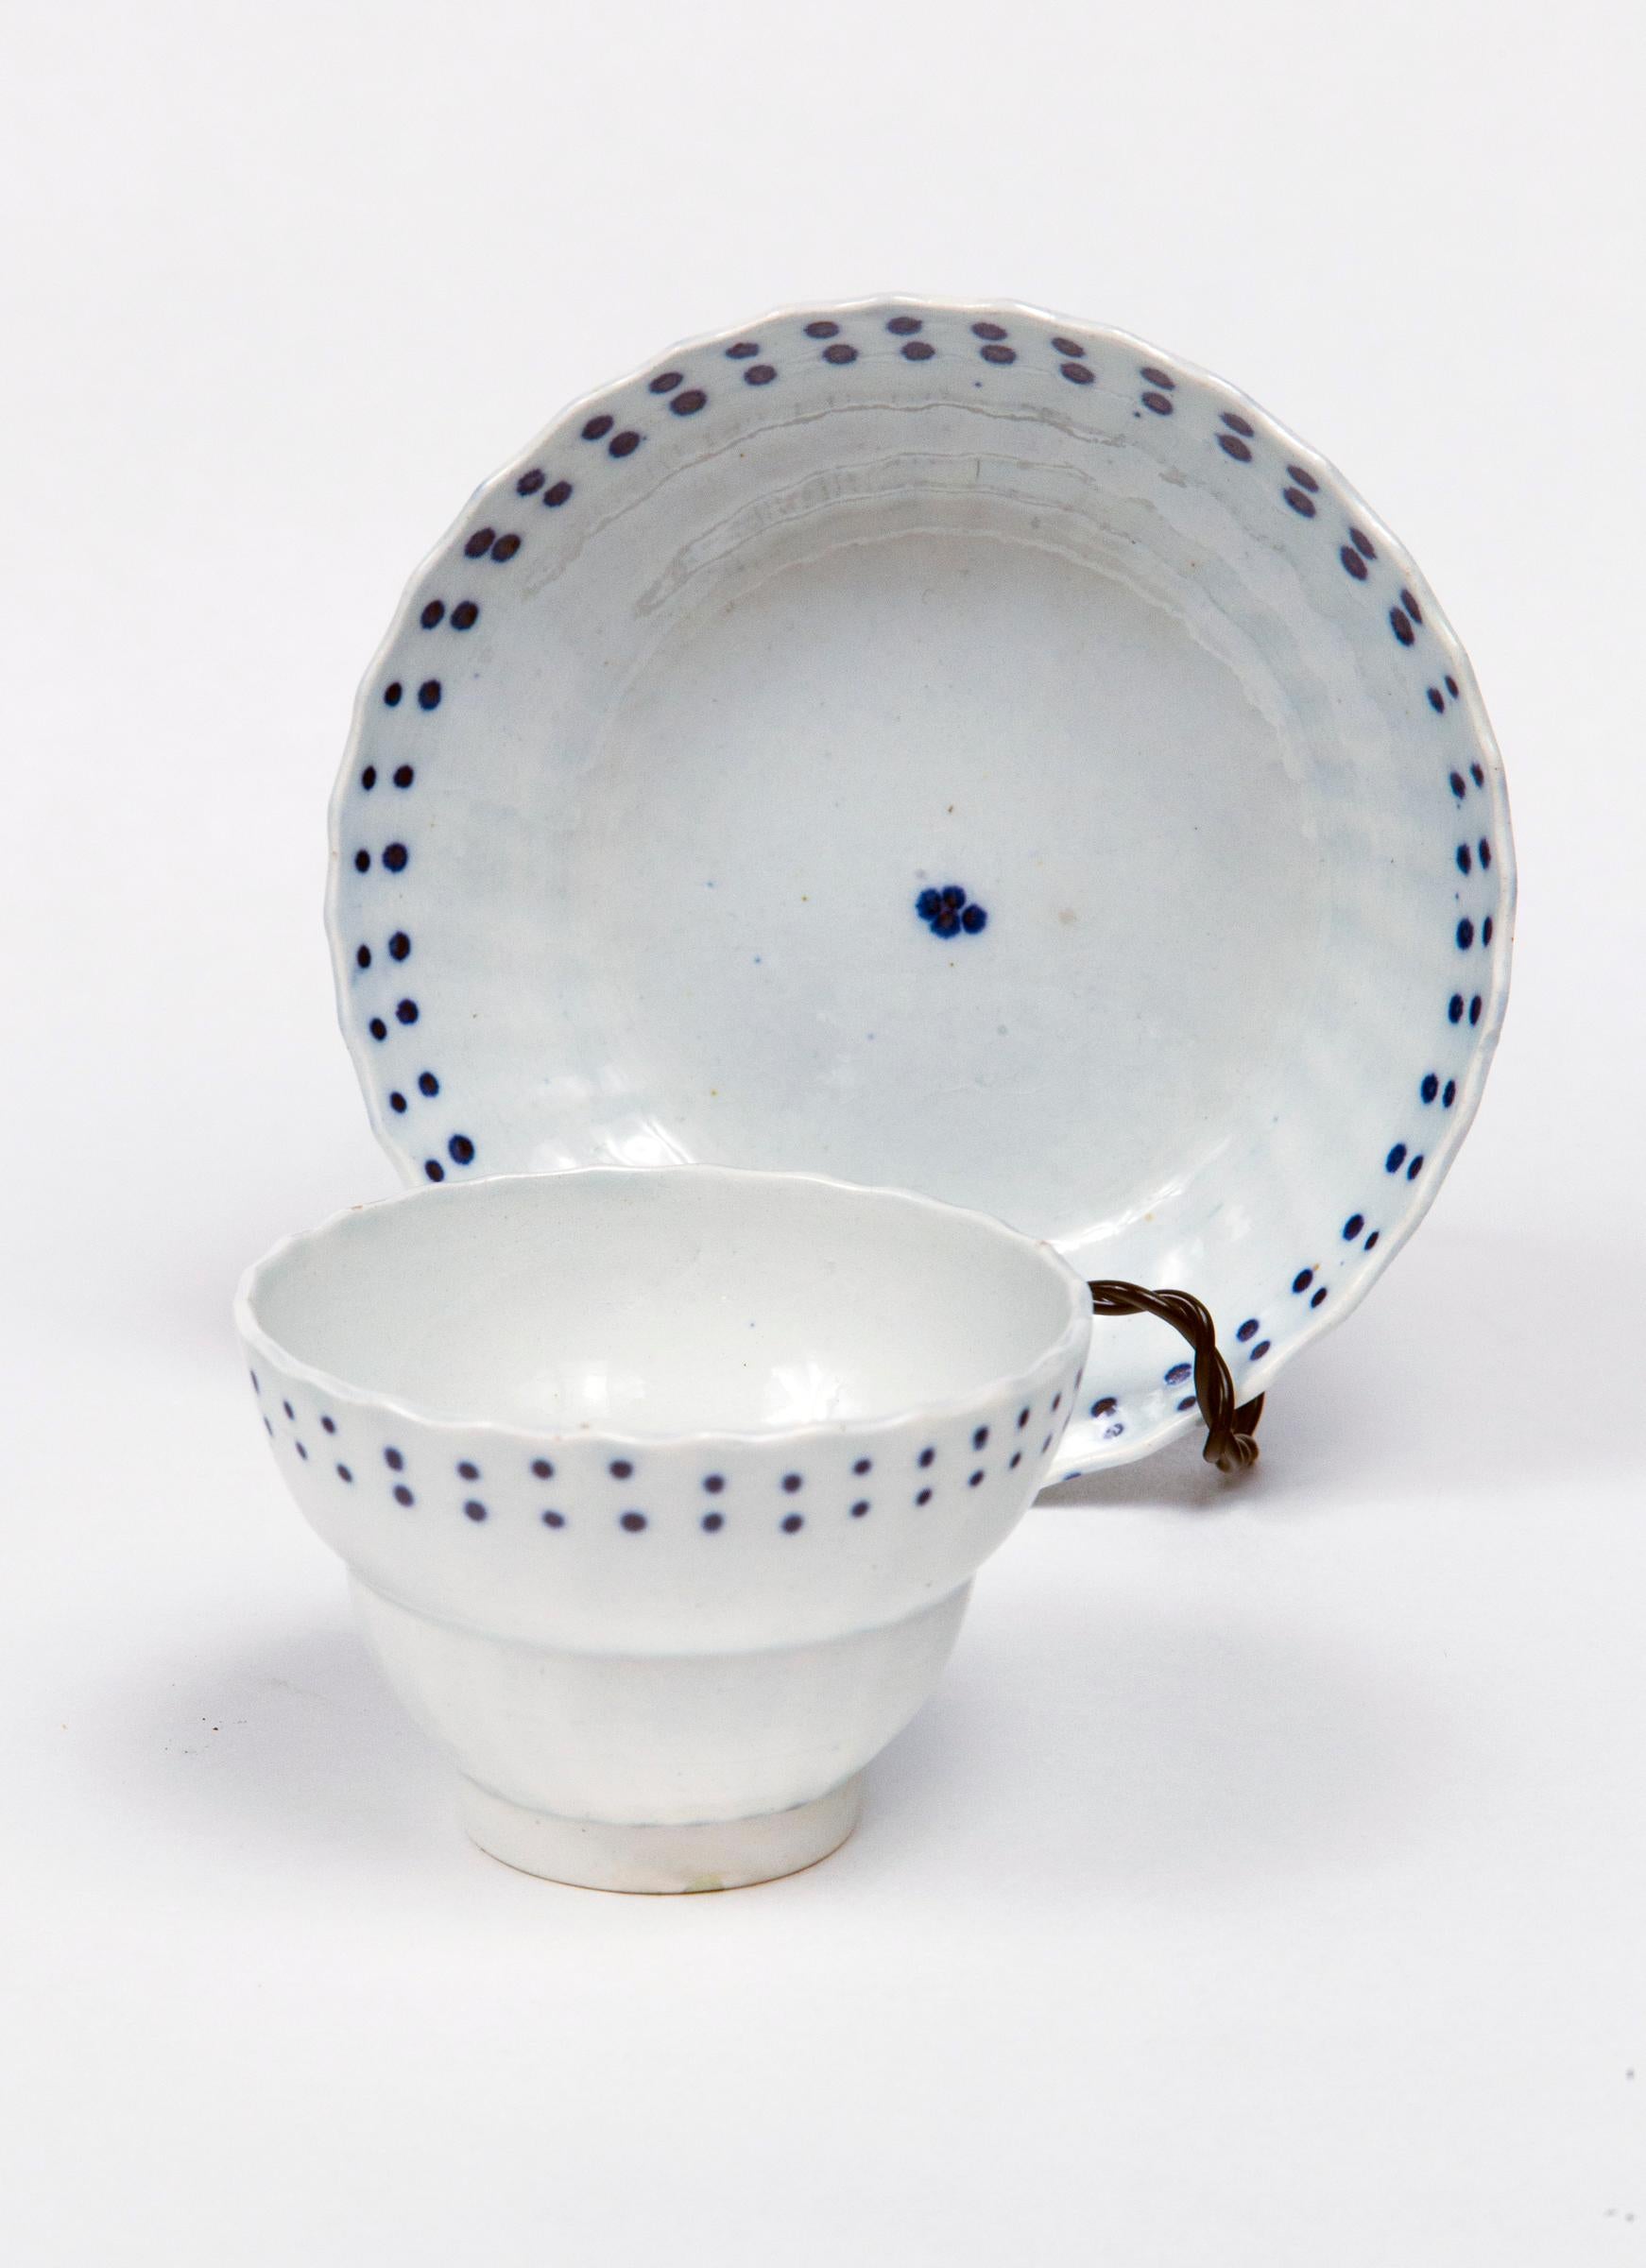 Englisches Teeservice aus Perlmutt, frühes 19. Jahrhundert. Zwei Teekannen mit Schwanenköpfen. Sechs Teeschalen und passende Untertassen. Zartes weißes Porzellan mit grafischen blauen Glasurmustern.